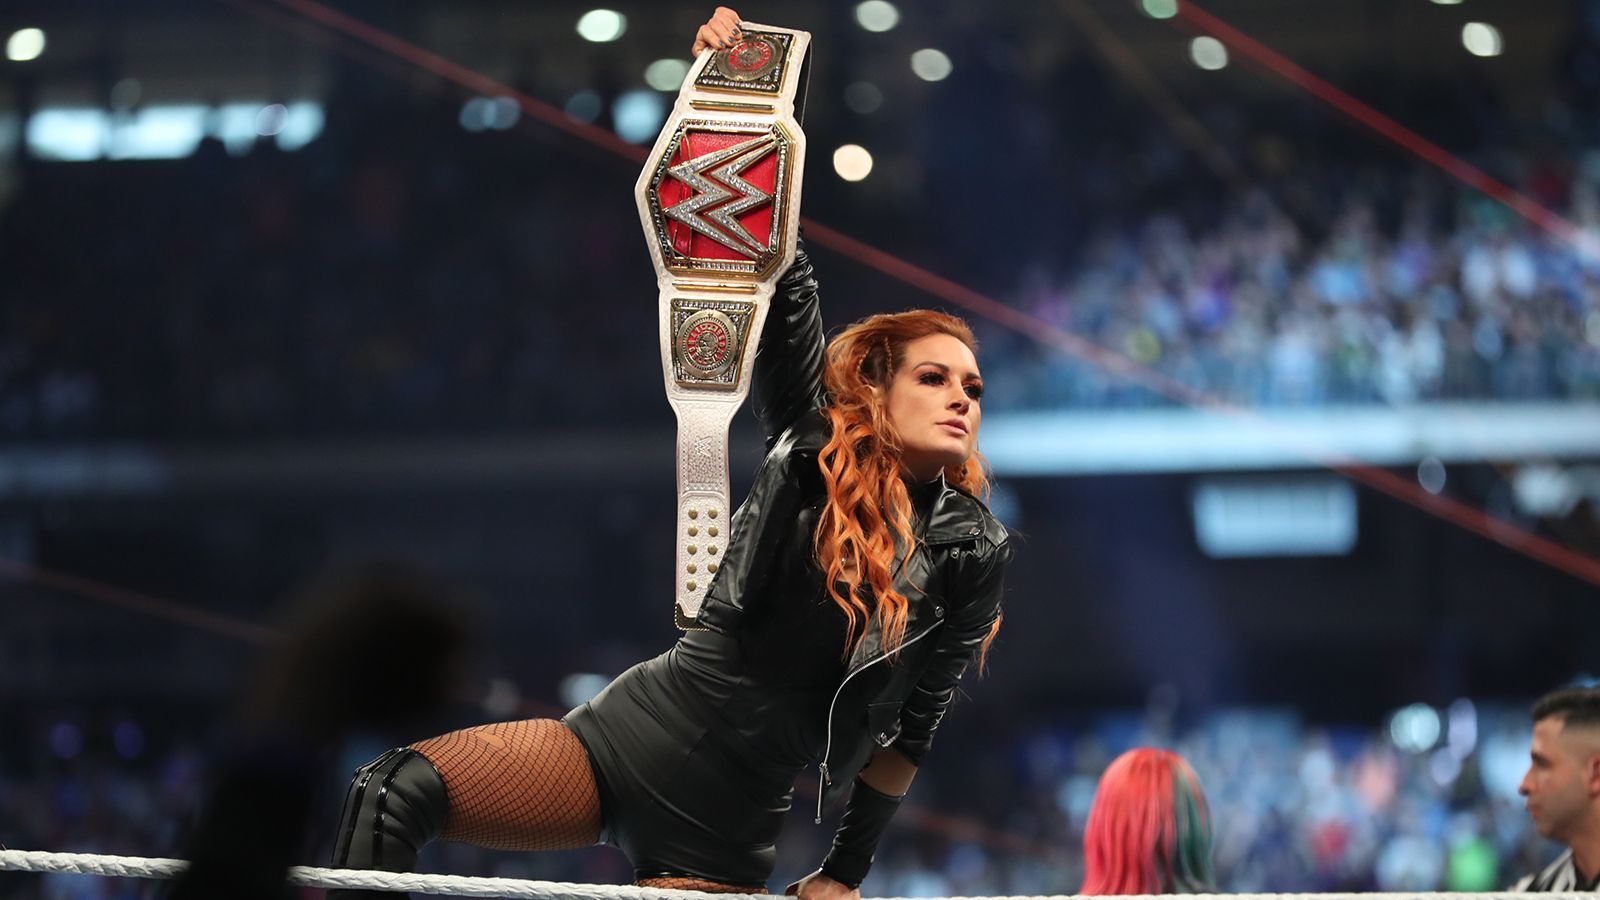 
                <strong>WWE Raw Women’s Championship </strong><br>
                WWE Raw Women's ChampionshipAktuelle Titelträgerin: Becky LynchTitel gewonnen gegen: Ronda Rousey (c) & Charlotte FlairChampion seit: 8. April 2019 (WrestleMania 35)
              